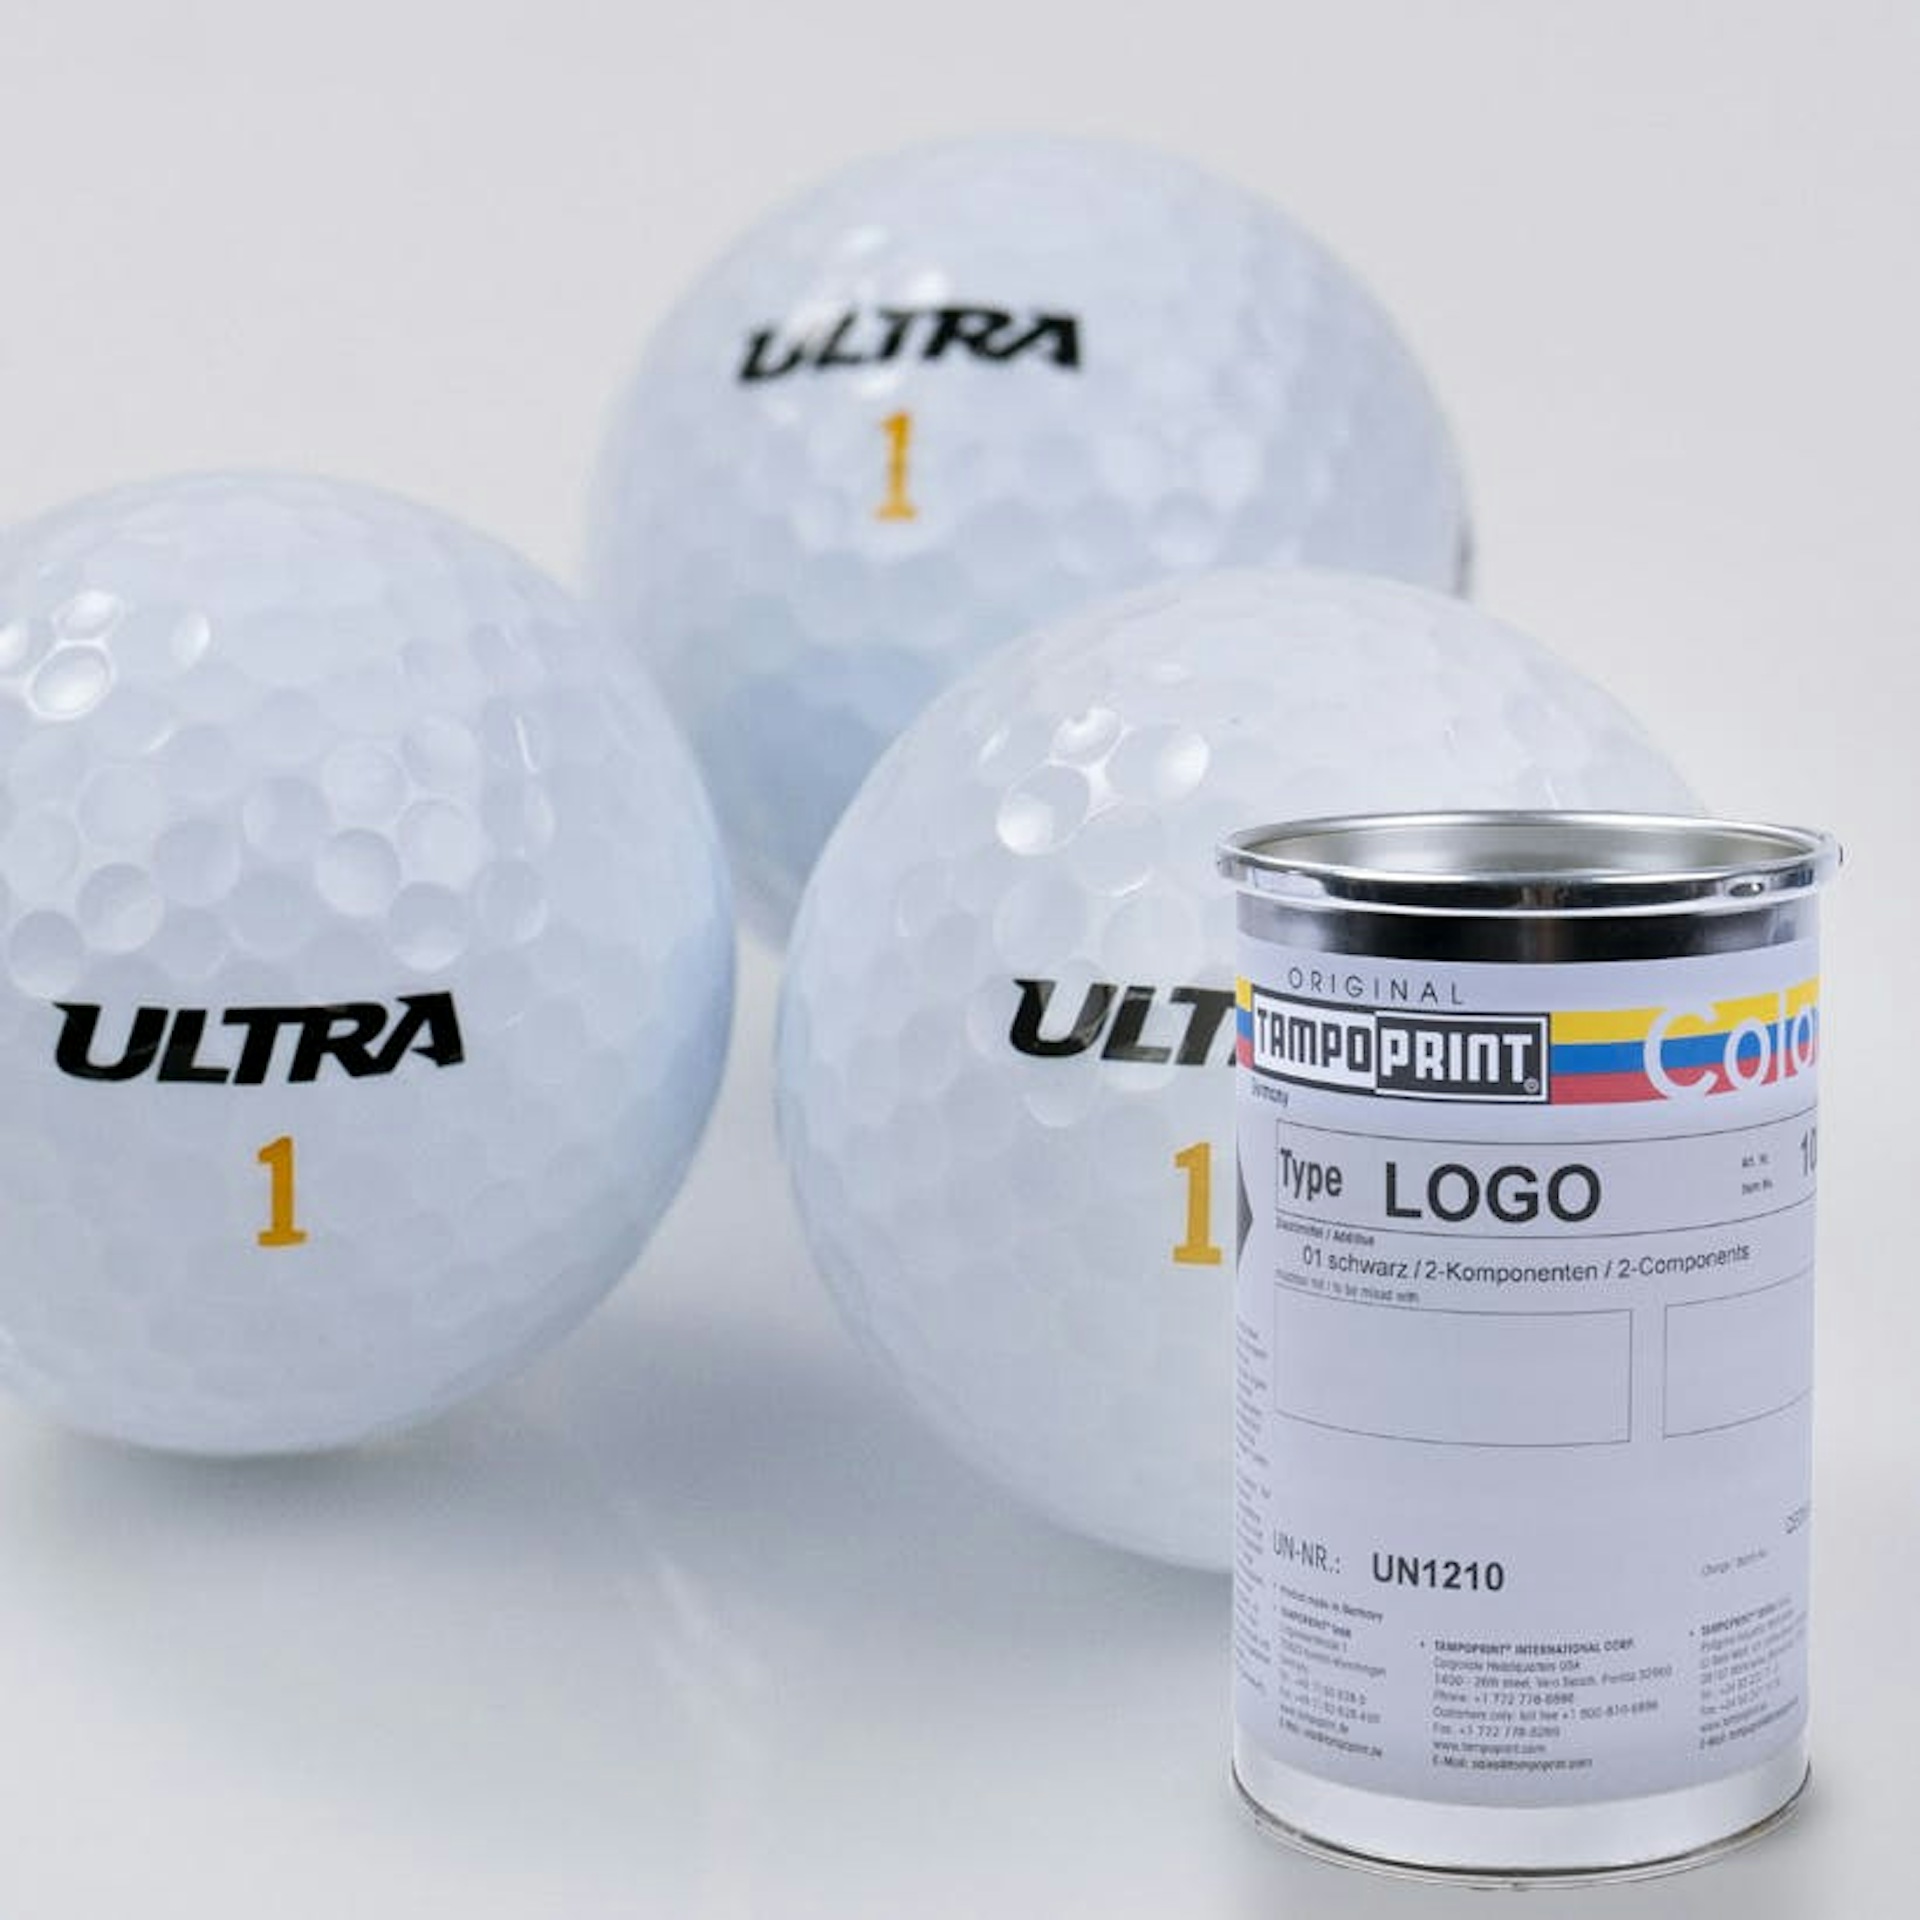 Eine Type LOGO Tampondruckfarbdose mit bedruckten Golfbällen im Hintergrund. 